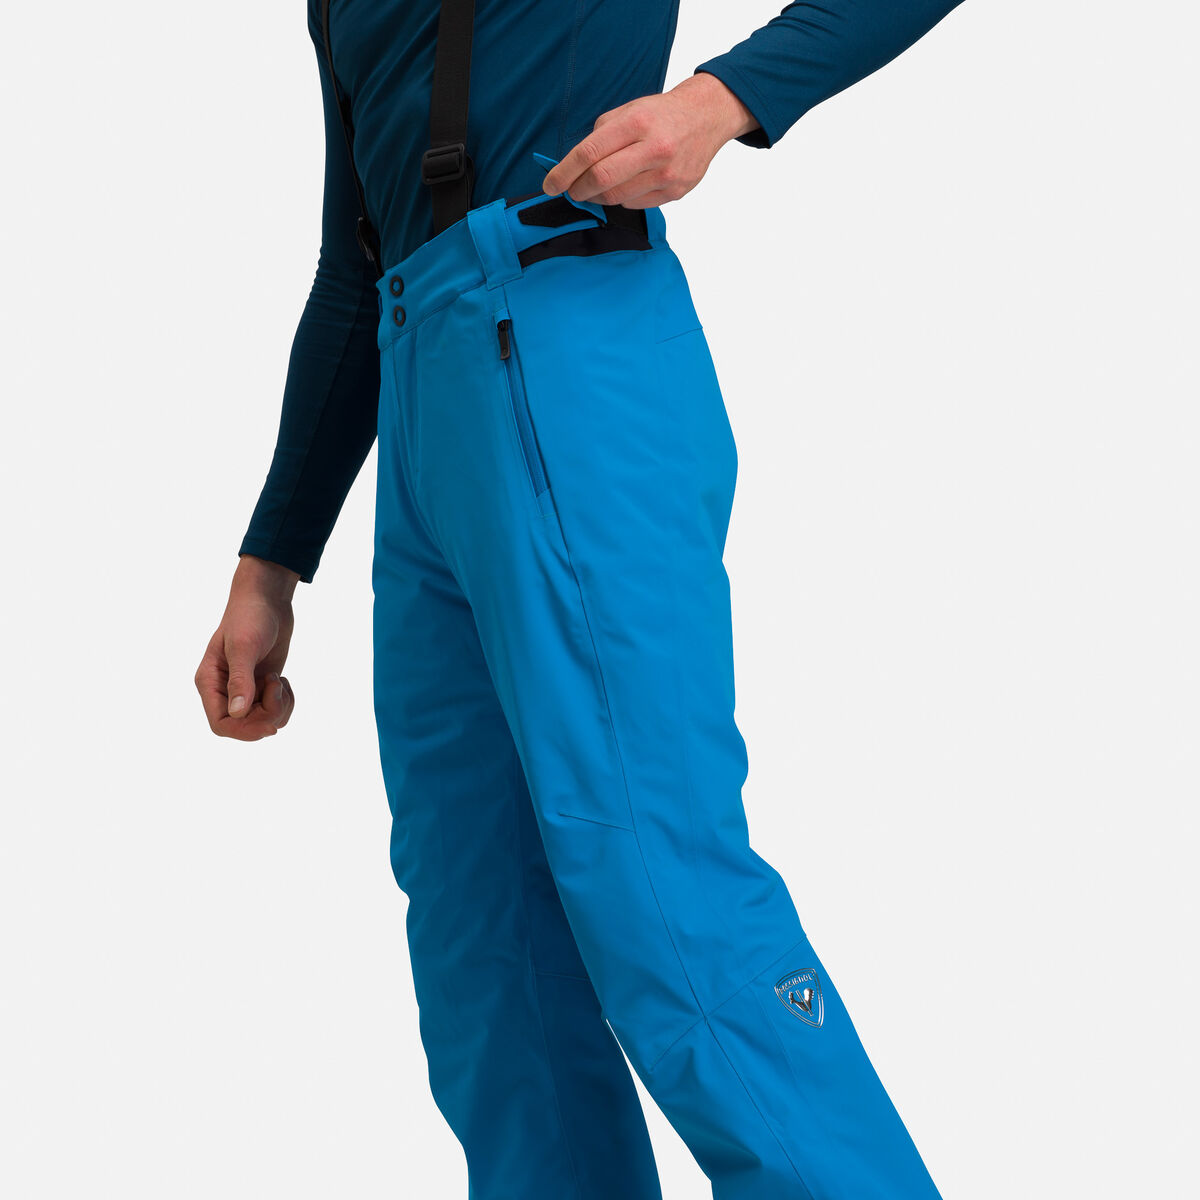 Rossignol Classique pantalón de esquí para hombre azul oscuro 